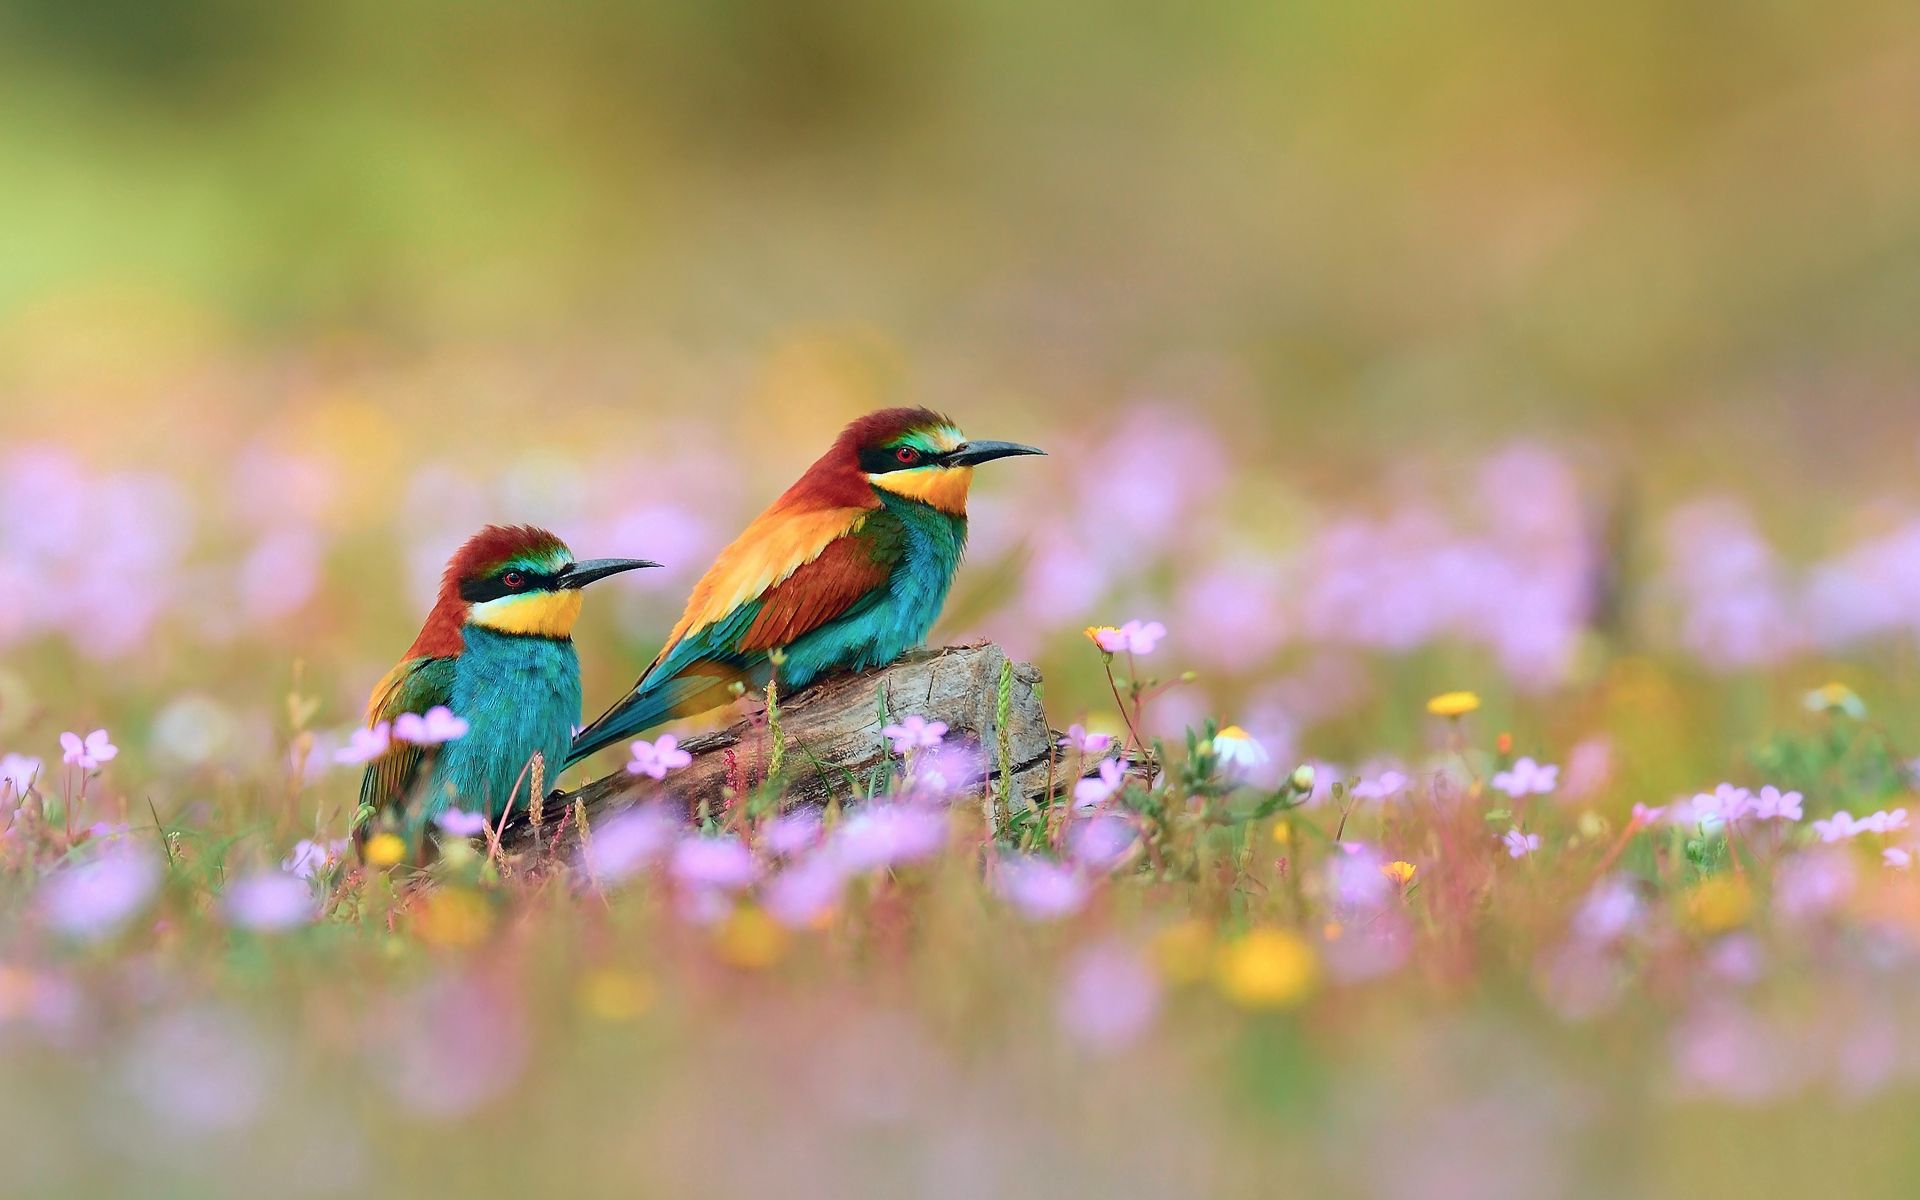 birds, animals, flowers, grass, blur, smooth, field